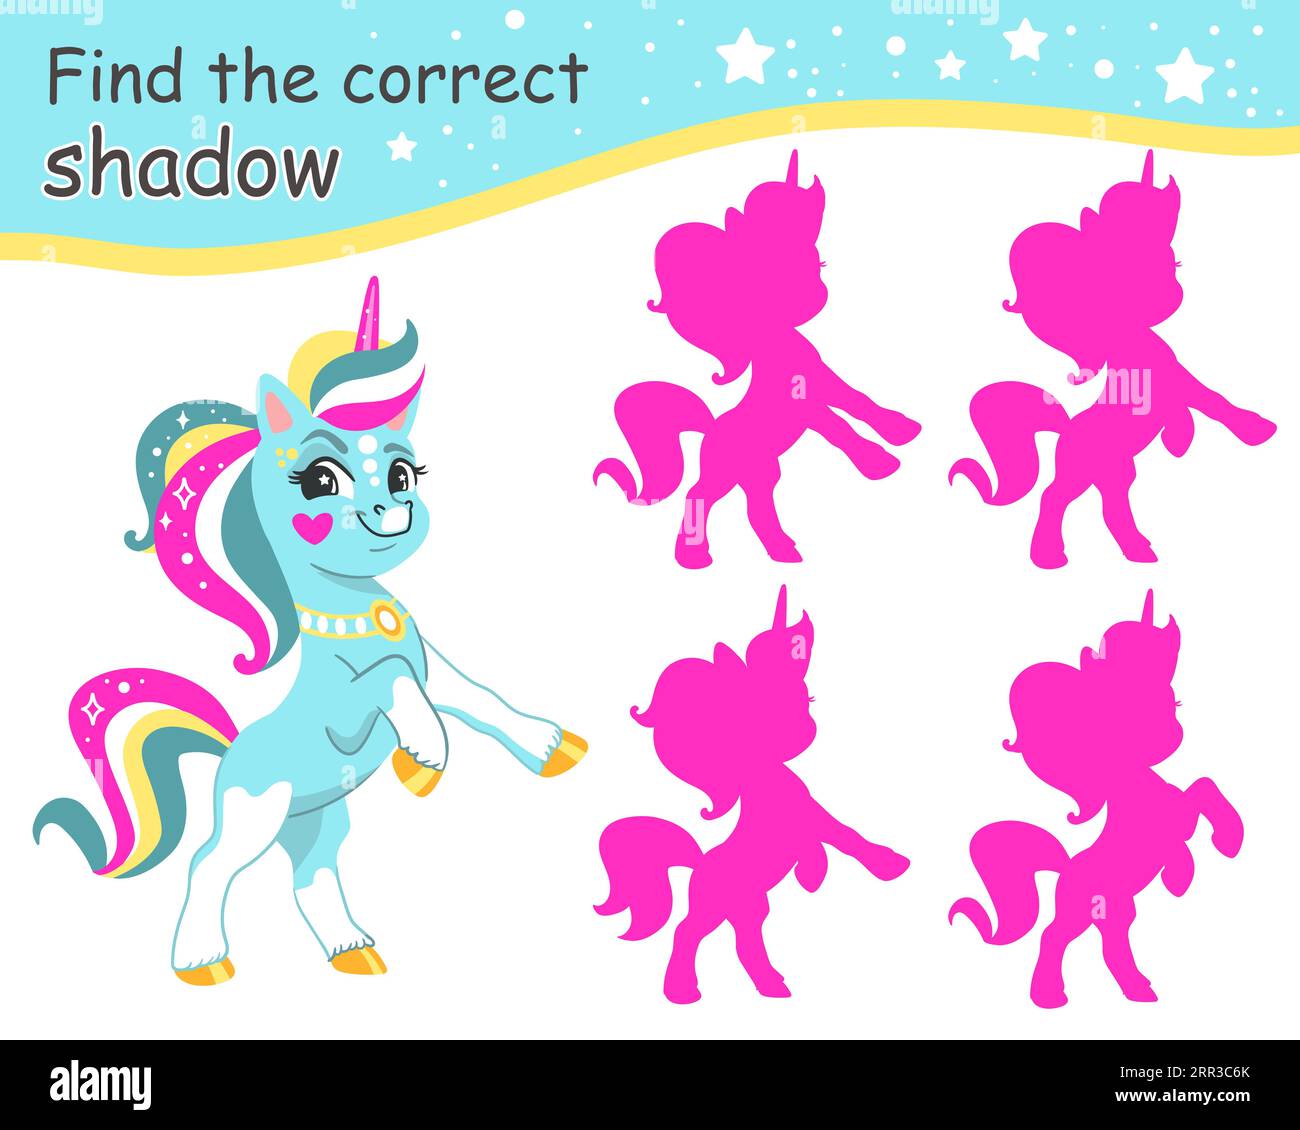 Suchen Sie den richtigen Schatten. Niedliches Einhorn und pinkfarbene Schatten. Pädagogisches Matching-Spiel für Kinder mit Zeichentrickcharakter. Aktivität, Logikspiel, Lernen Stock Vektor